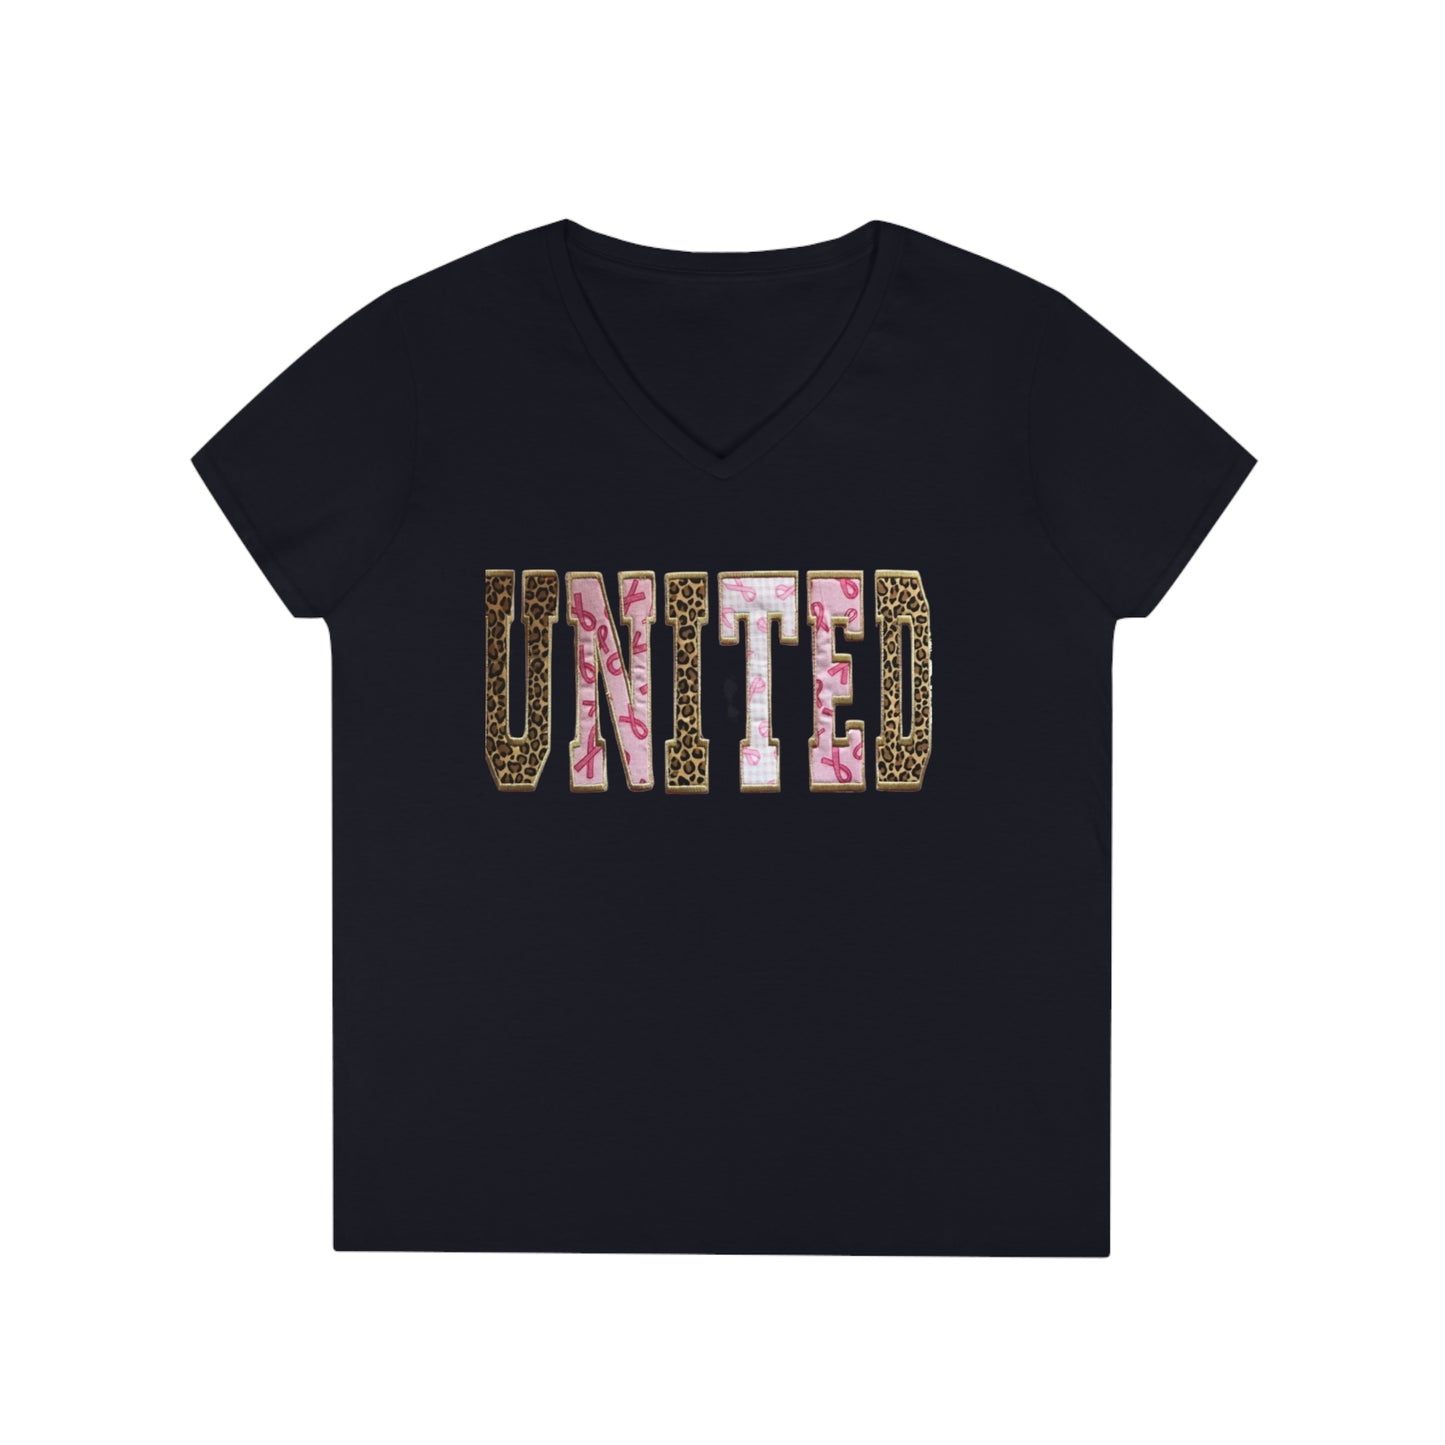 UNITED T-Shirt